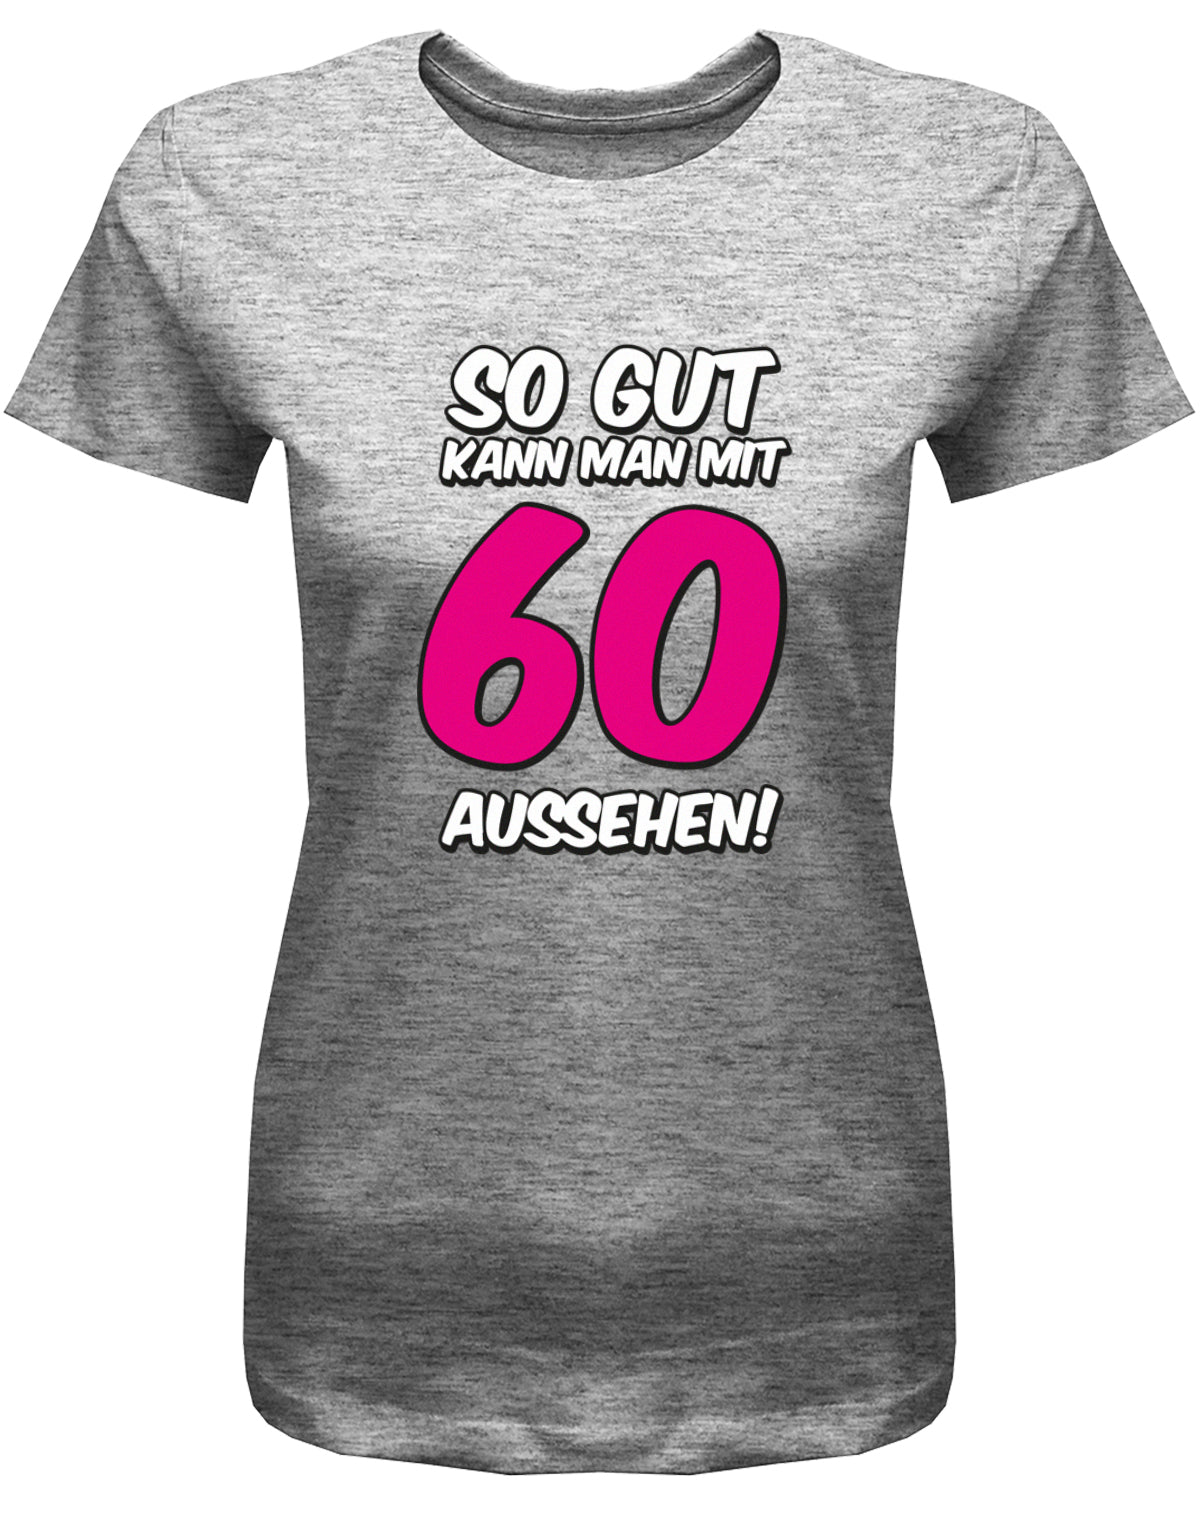 Lustiges T-Shirt zum 60 Geburtstag für die Frau Bedruckt mit So gut kann man mit 60 aussehen. Große 60 in Pink. Grau